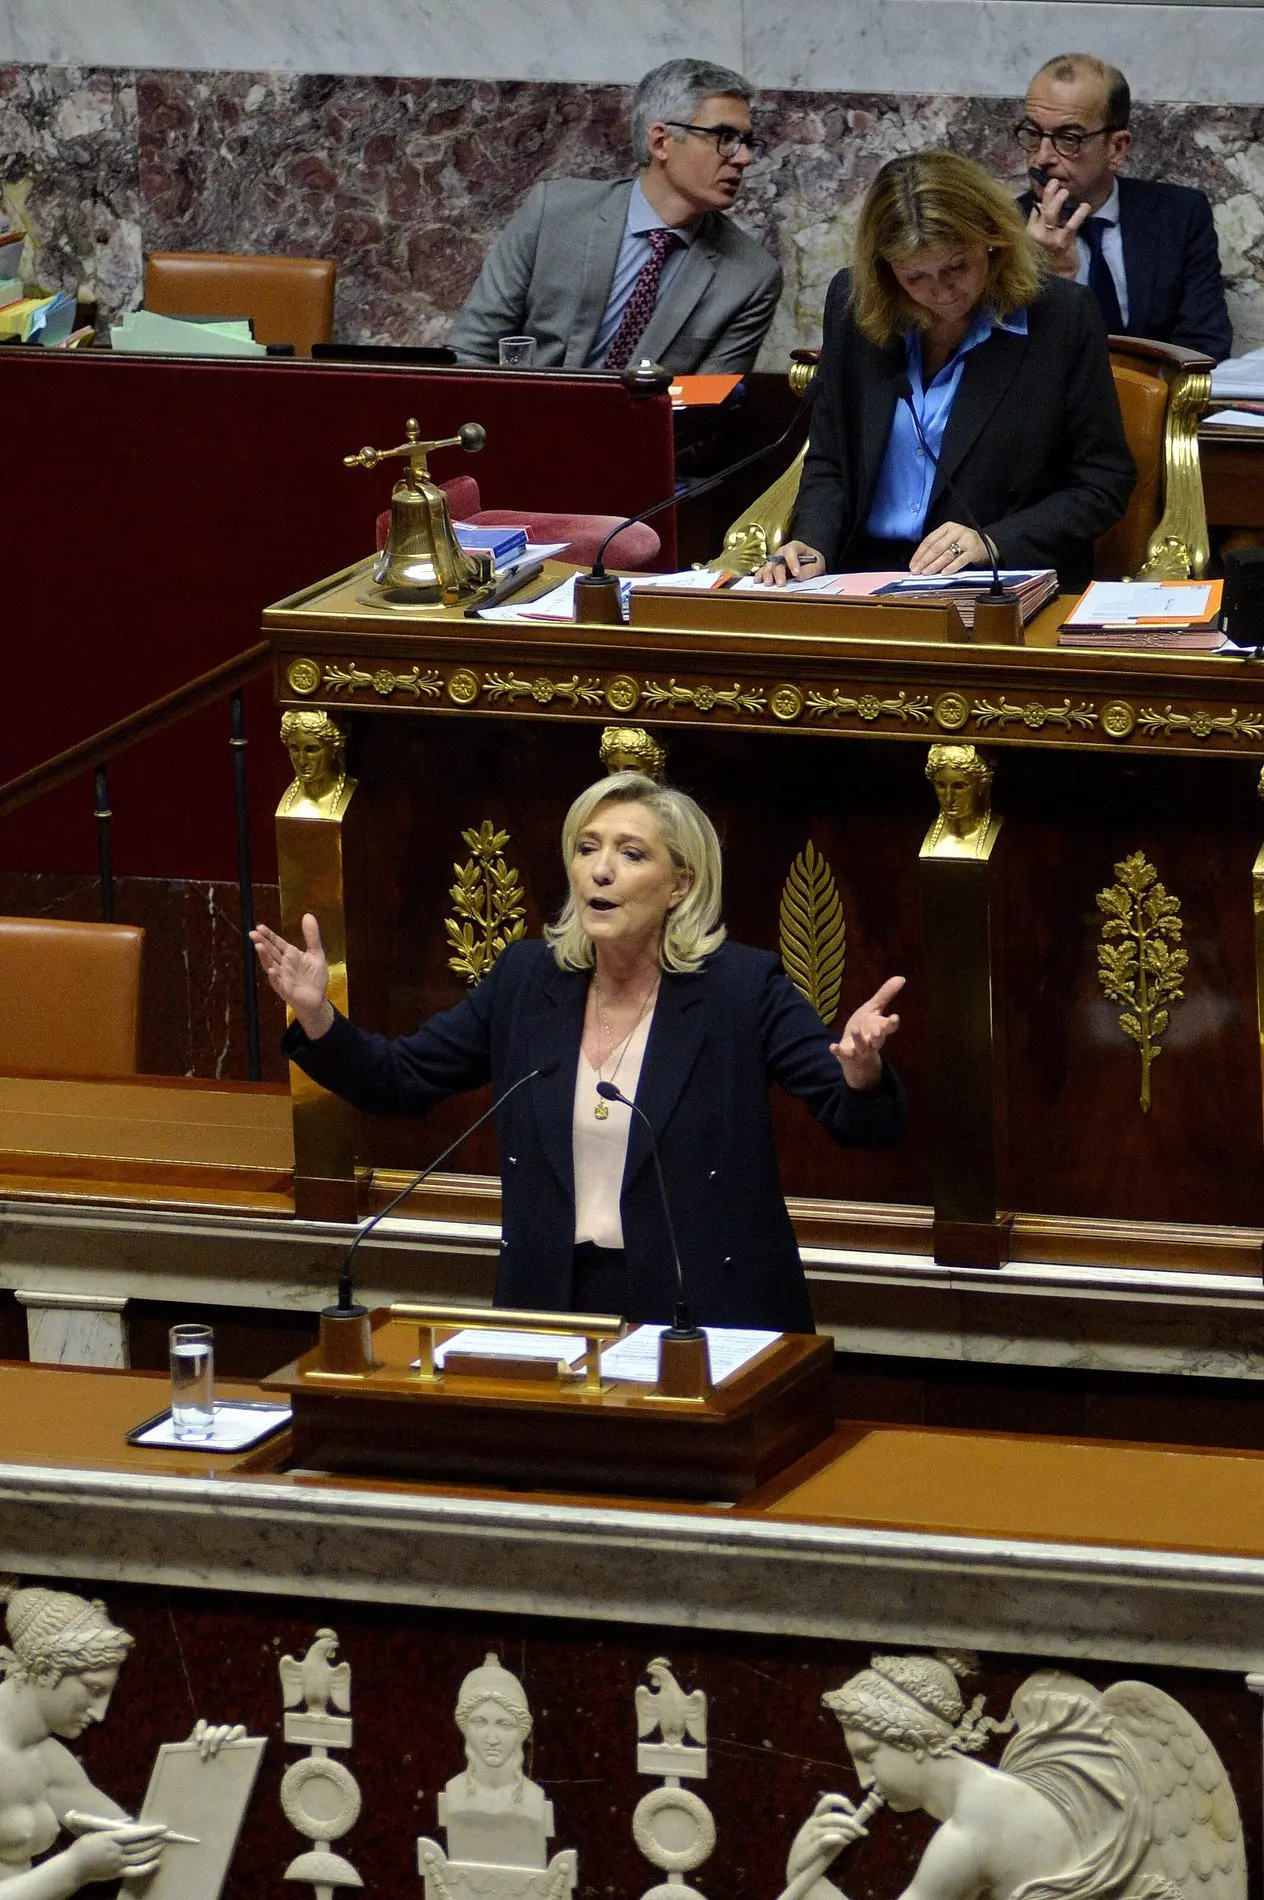 Marine Le Pen am Rednerpult im Parlament